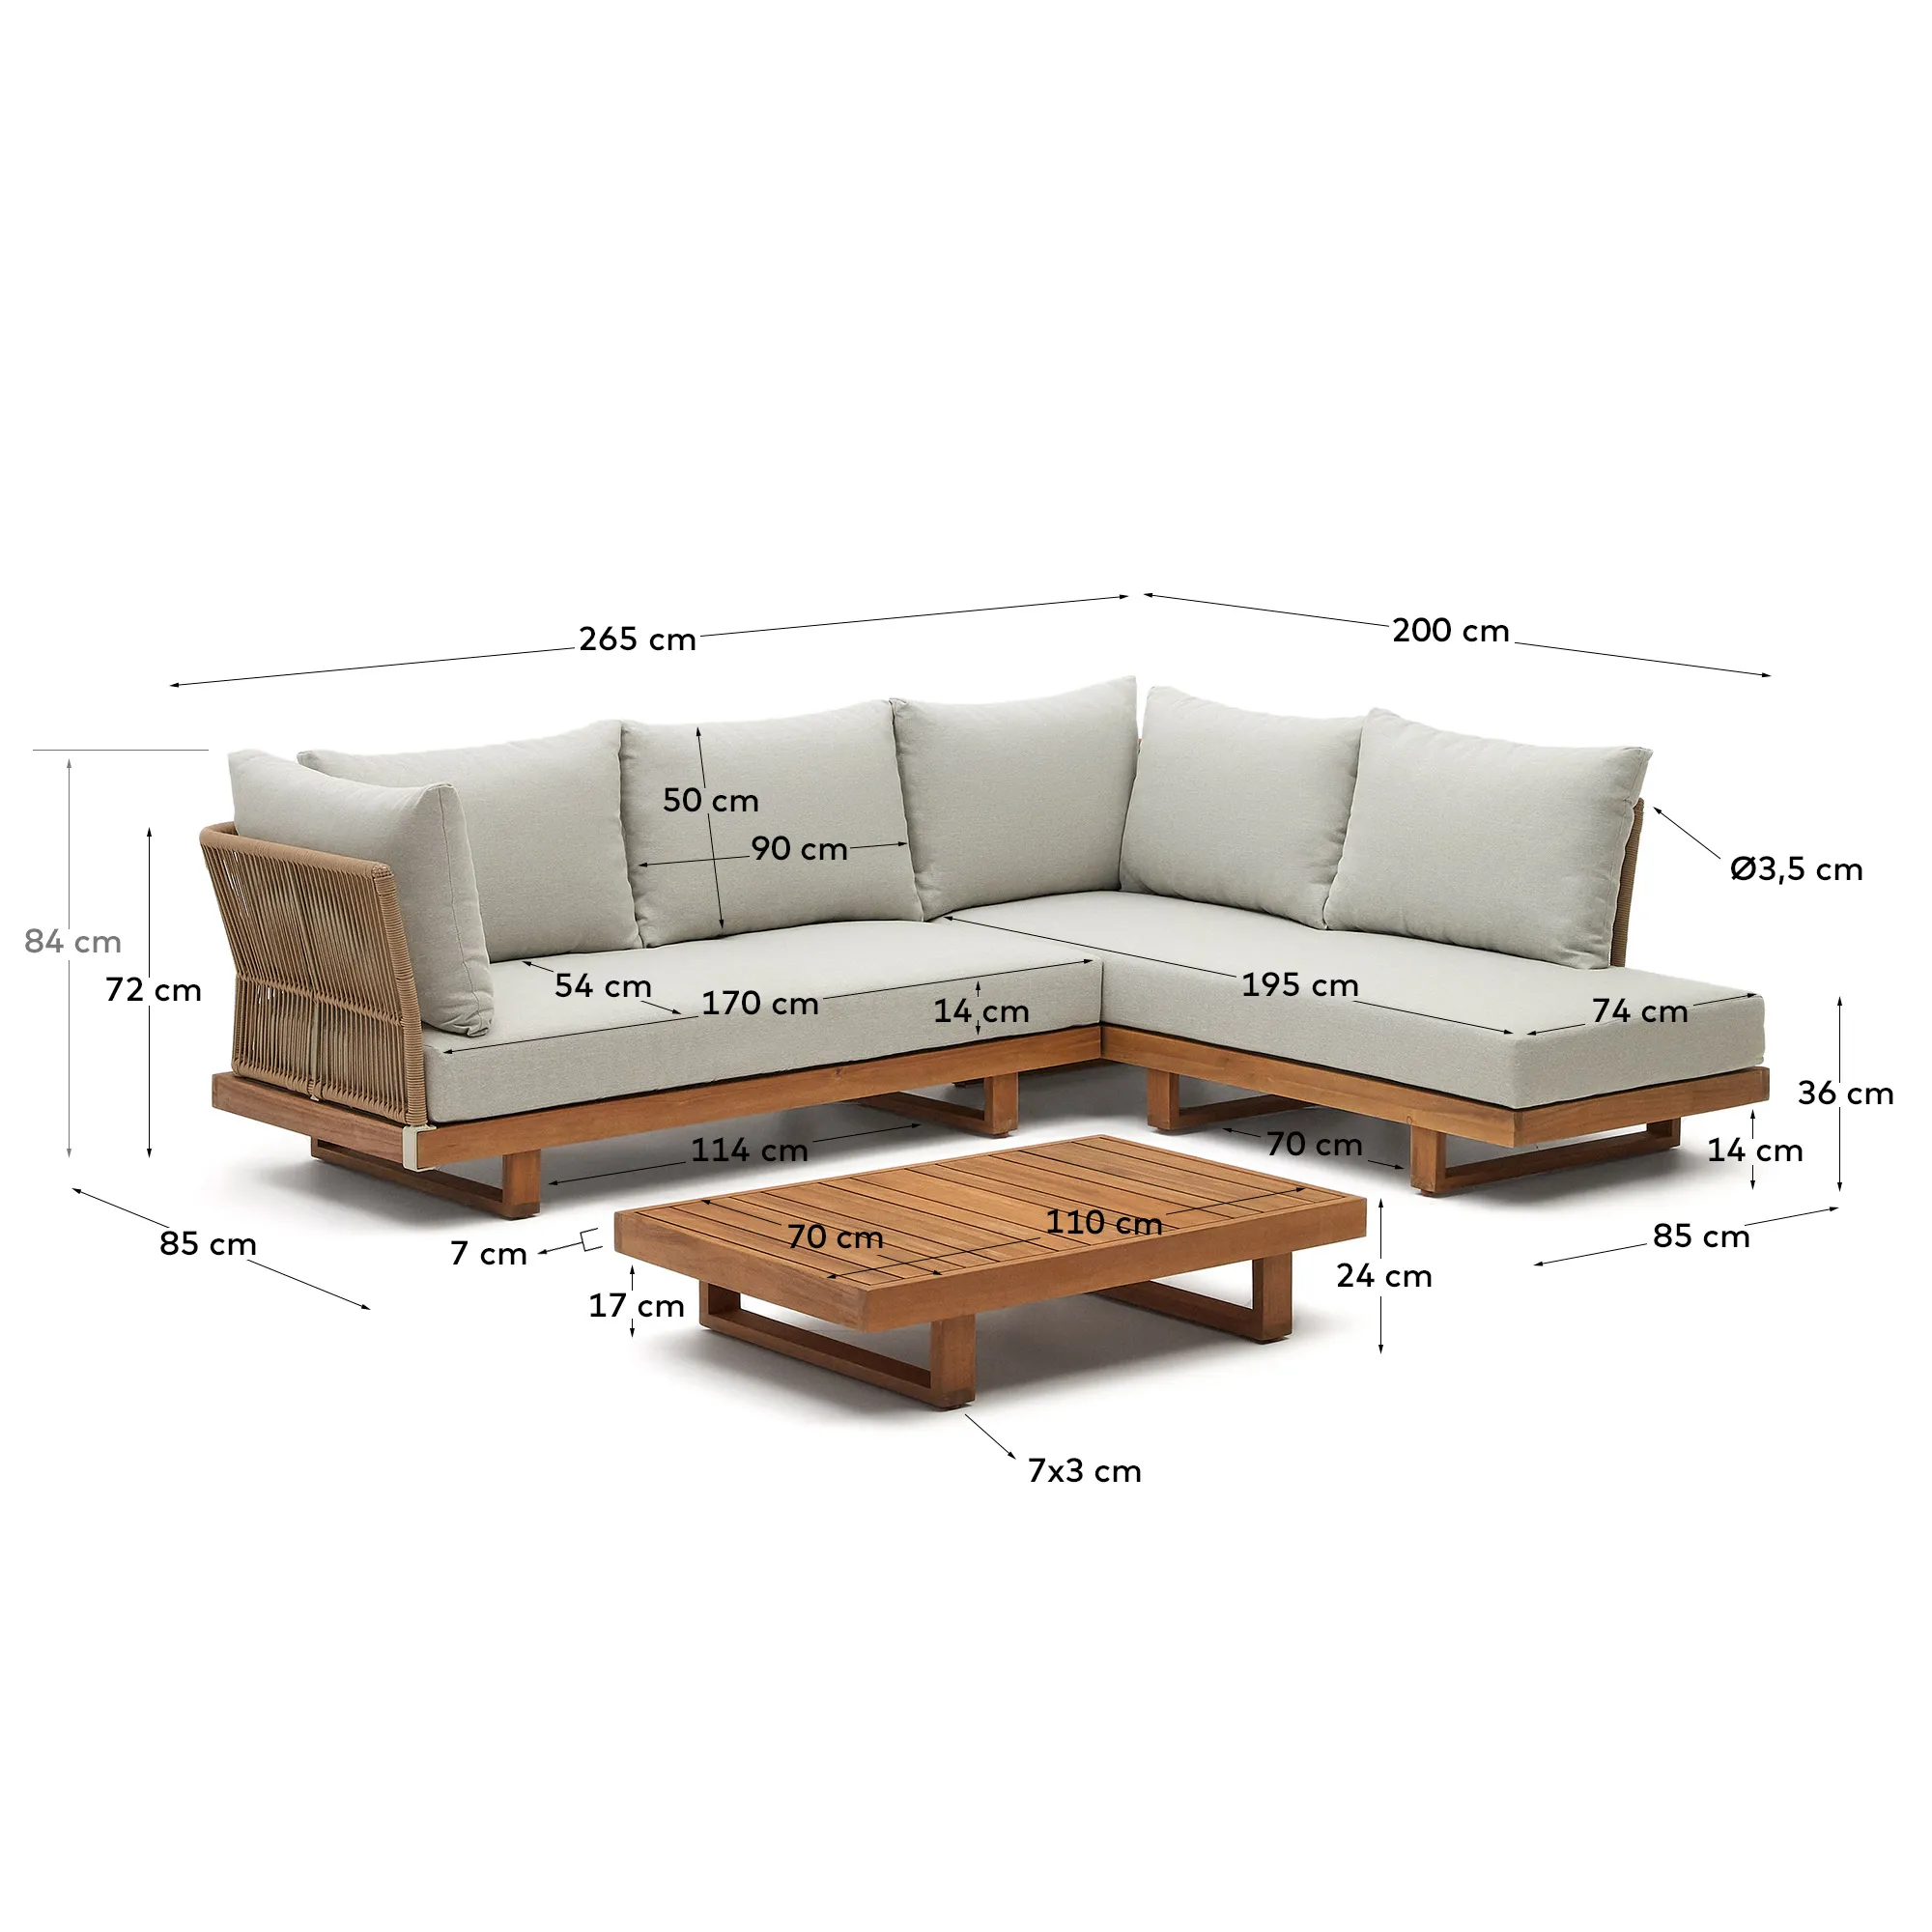 Комплект мебели La Forma Raco 5-местный угловой диван и журнальный столик массив акации 158154